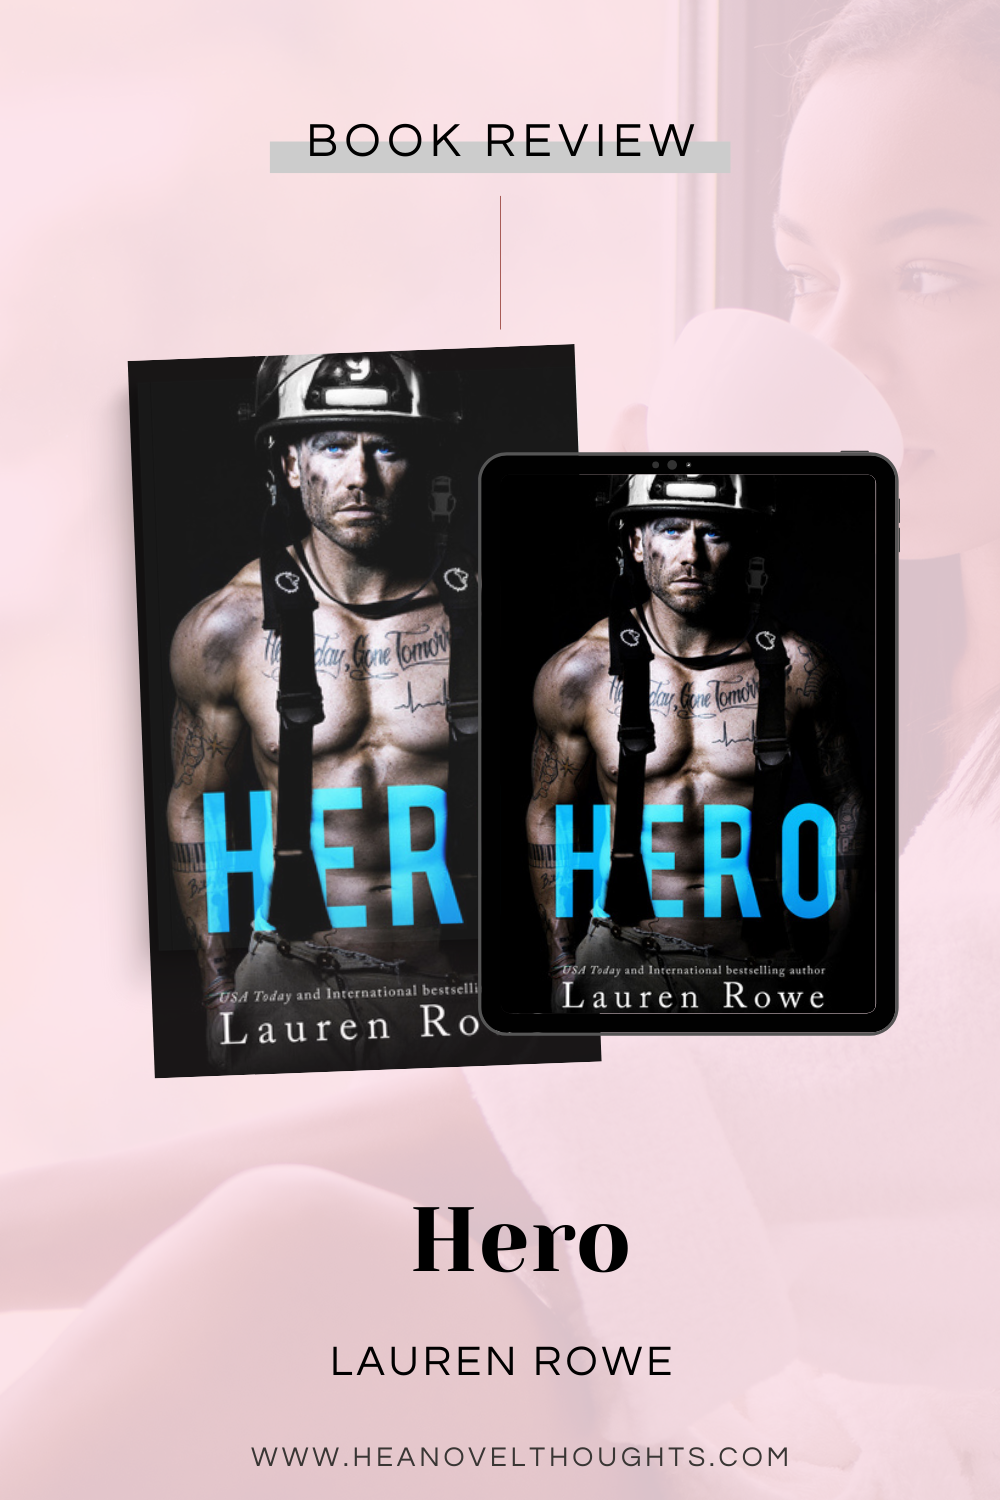 Hero by Lauren Rowe